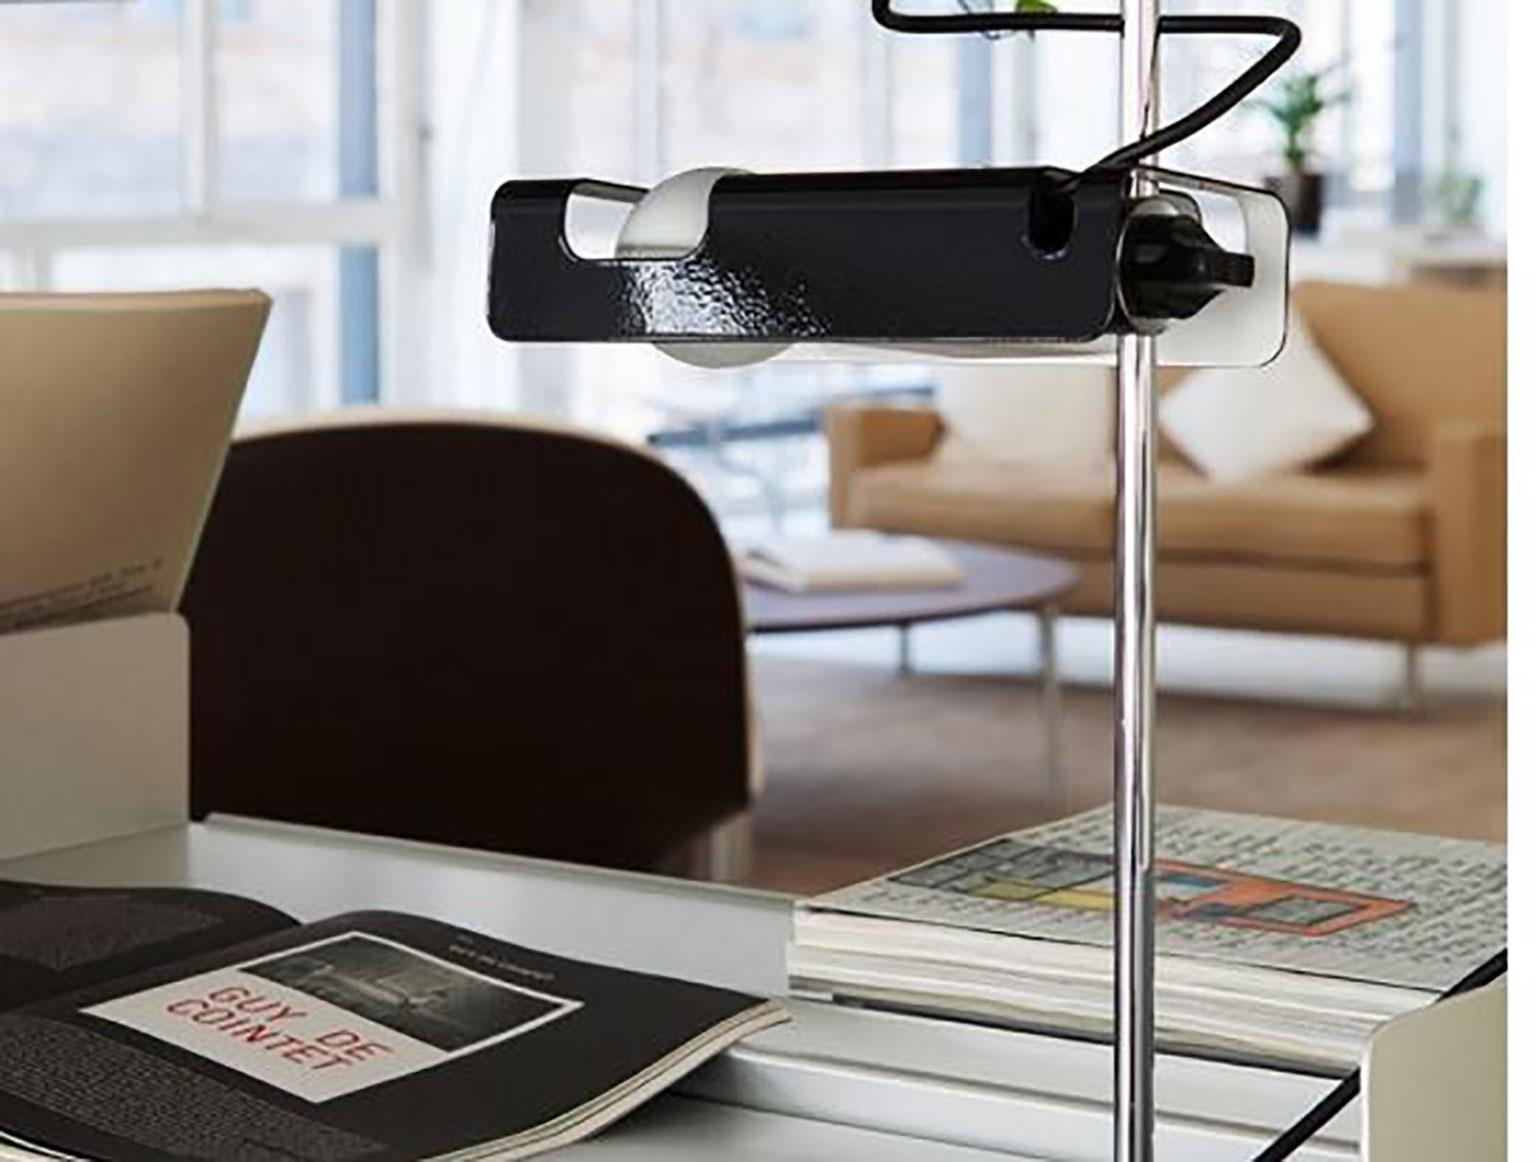 La lampe de table spider a été conçue par Joe Colombo pour Oluce. Cette lampe au réflecteur en tôle émaillée au four est spécialement conçue pour recevoir une ampoule spéciale pour projecteur horizontal. Un joint en plastique permet d'incliner le